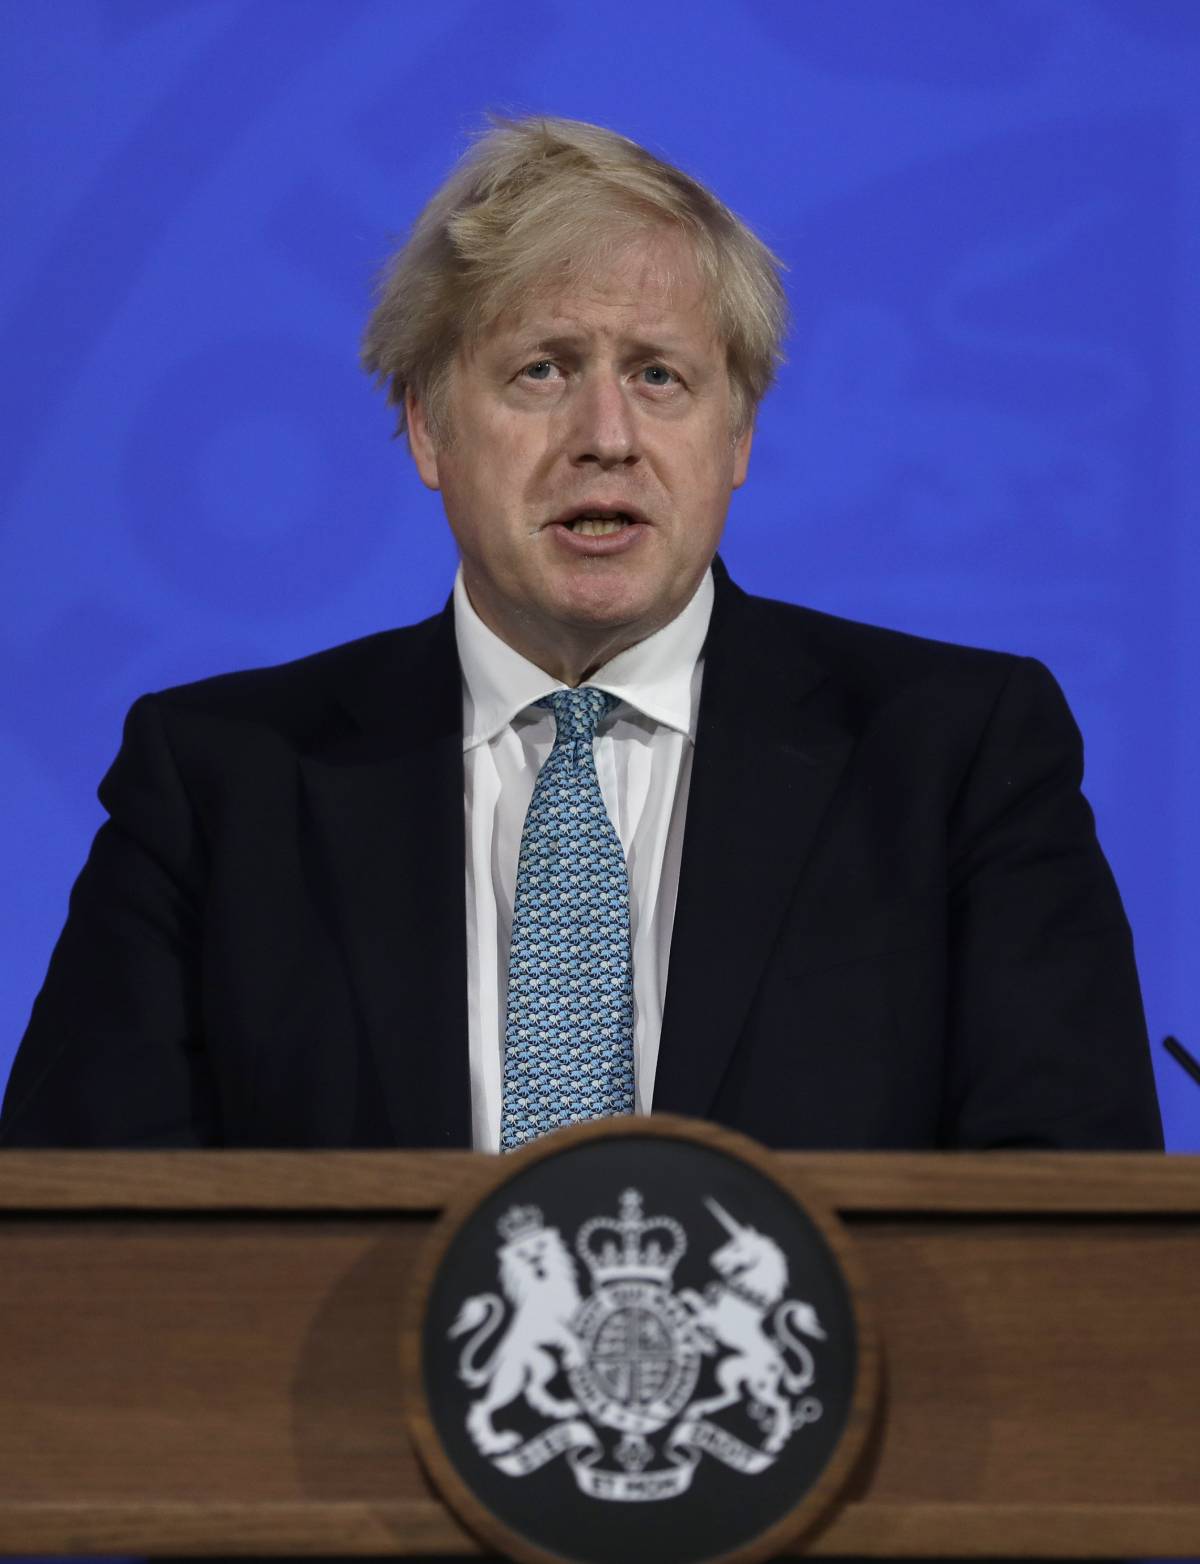 Le critiche e la marcia indietro: Boris Johnson in isolamento